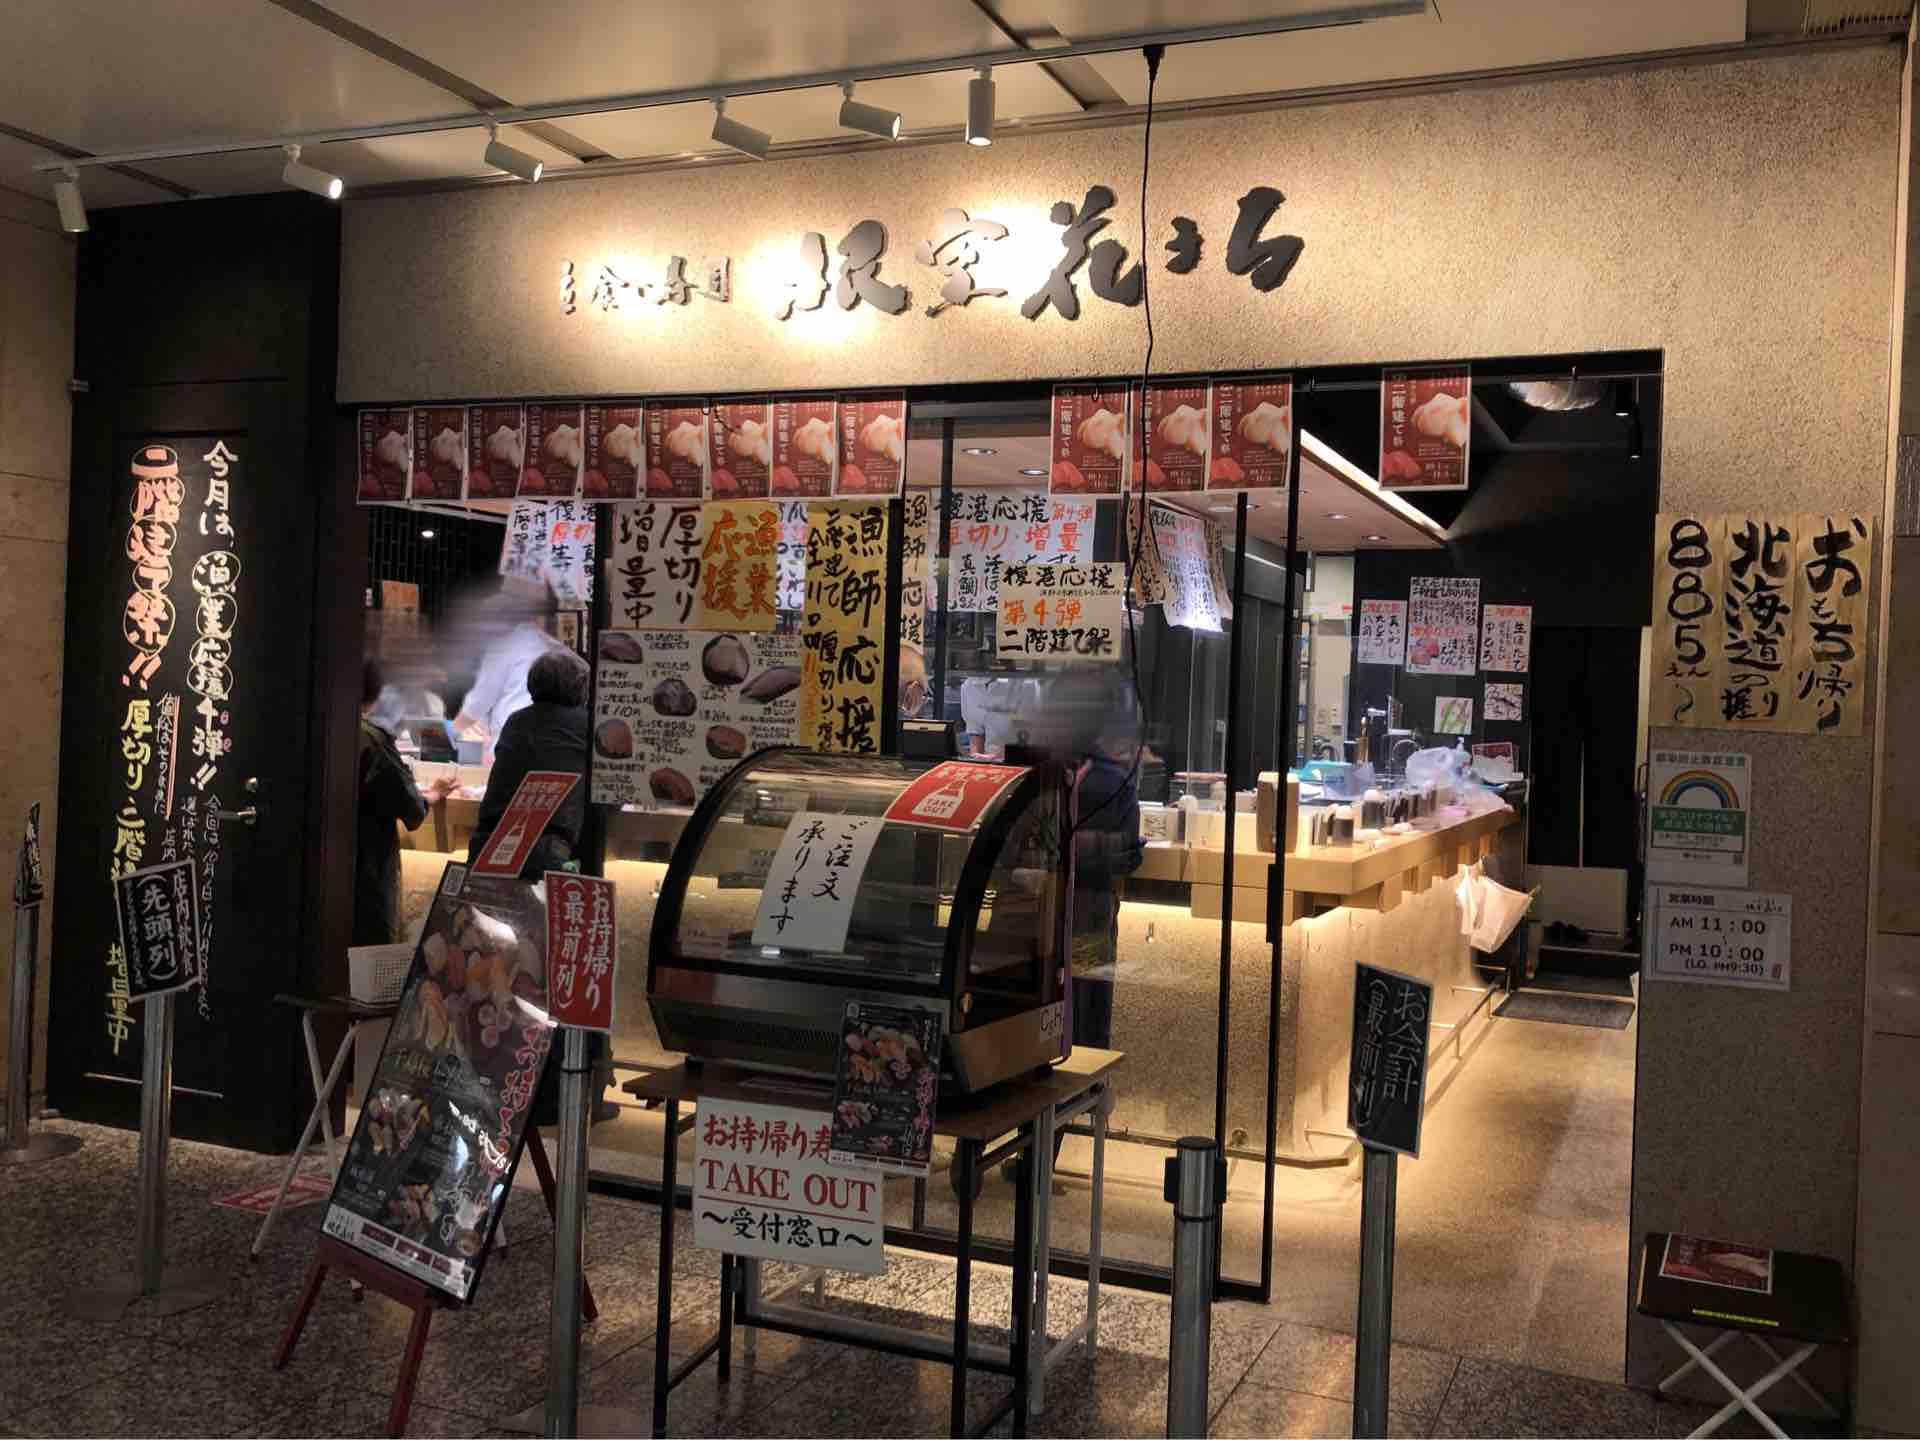 立ち 食い 寿司 東京 駅 『全国立ち食いそば紀行 104店舗